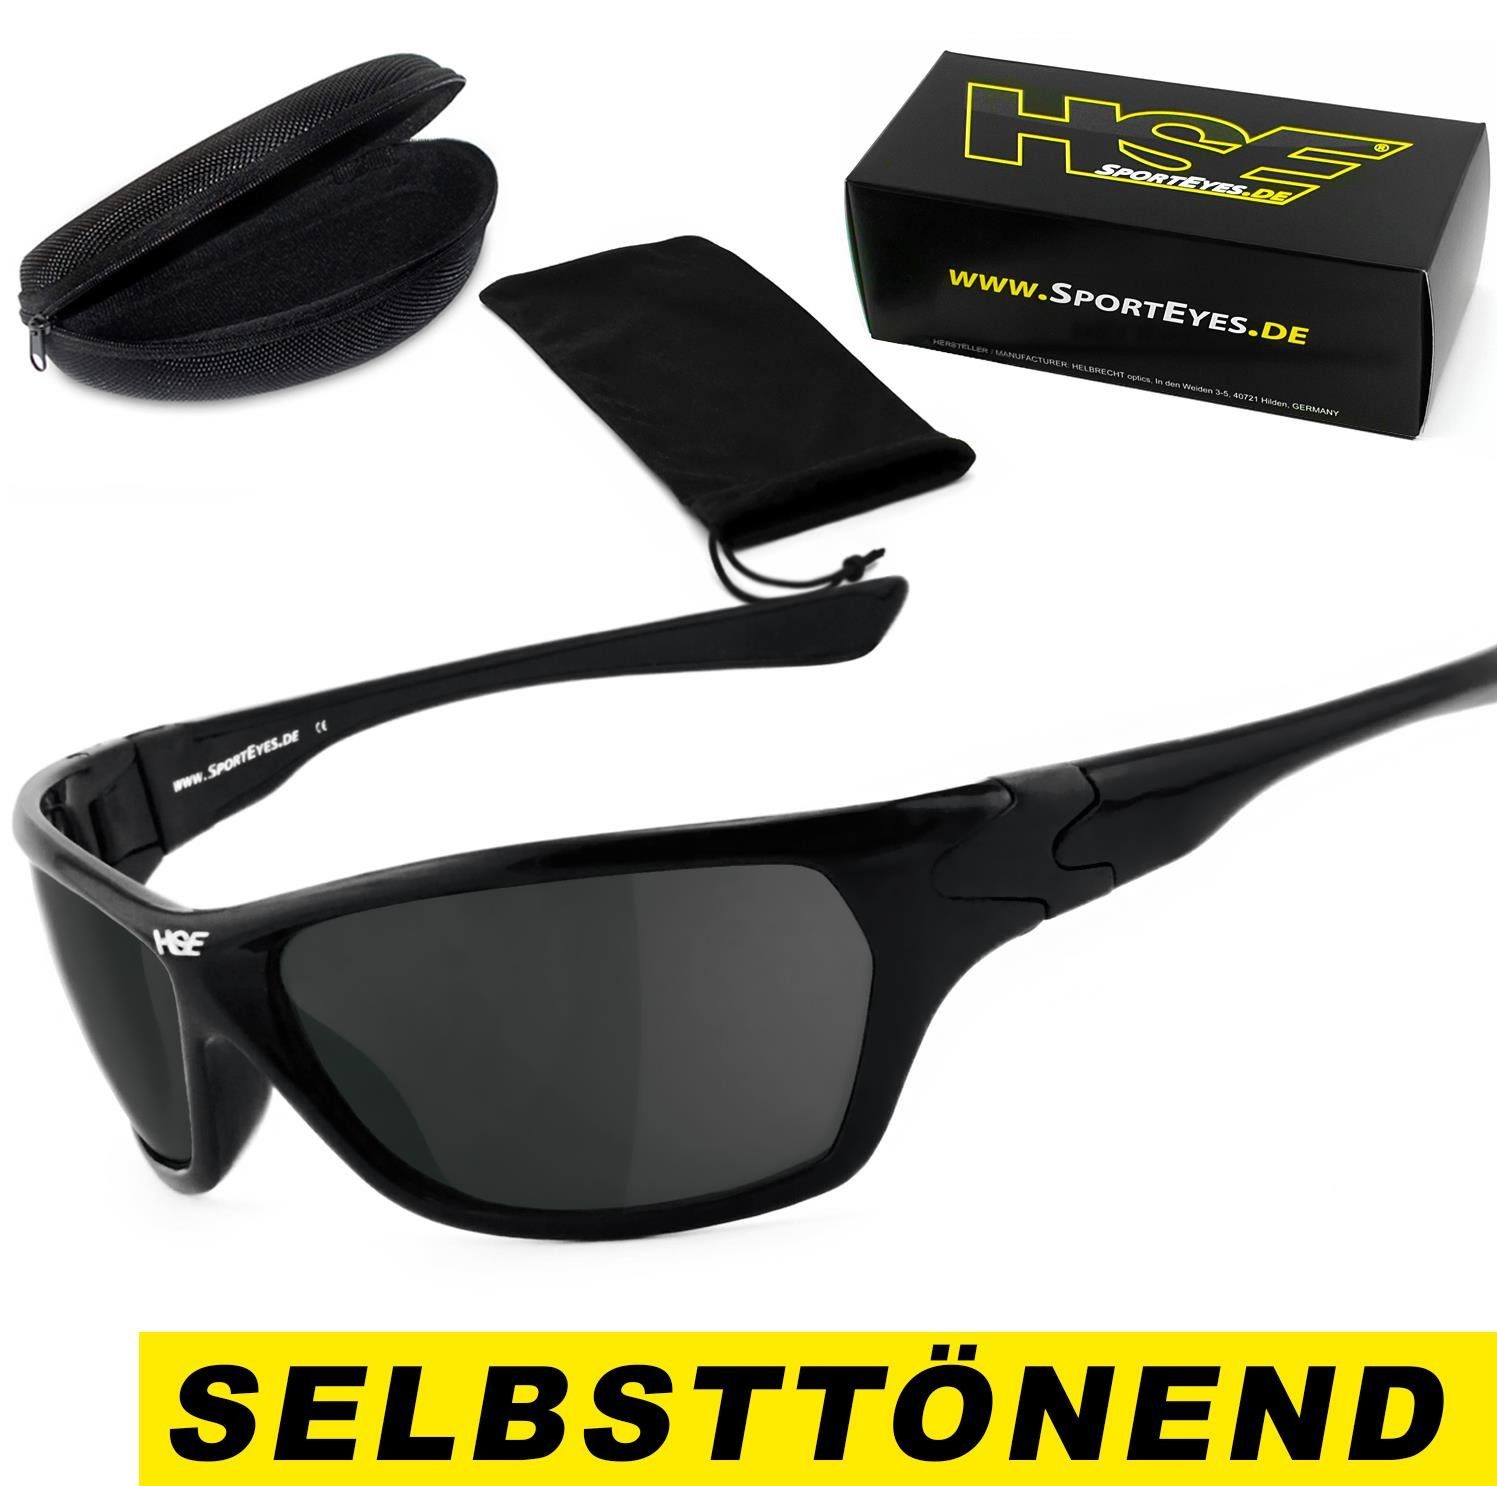 HSE - SportEyes Sportbrille HIGHSIDER - selbsttönend, schnell selbsttönende Gläser